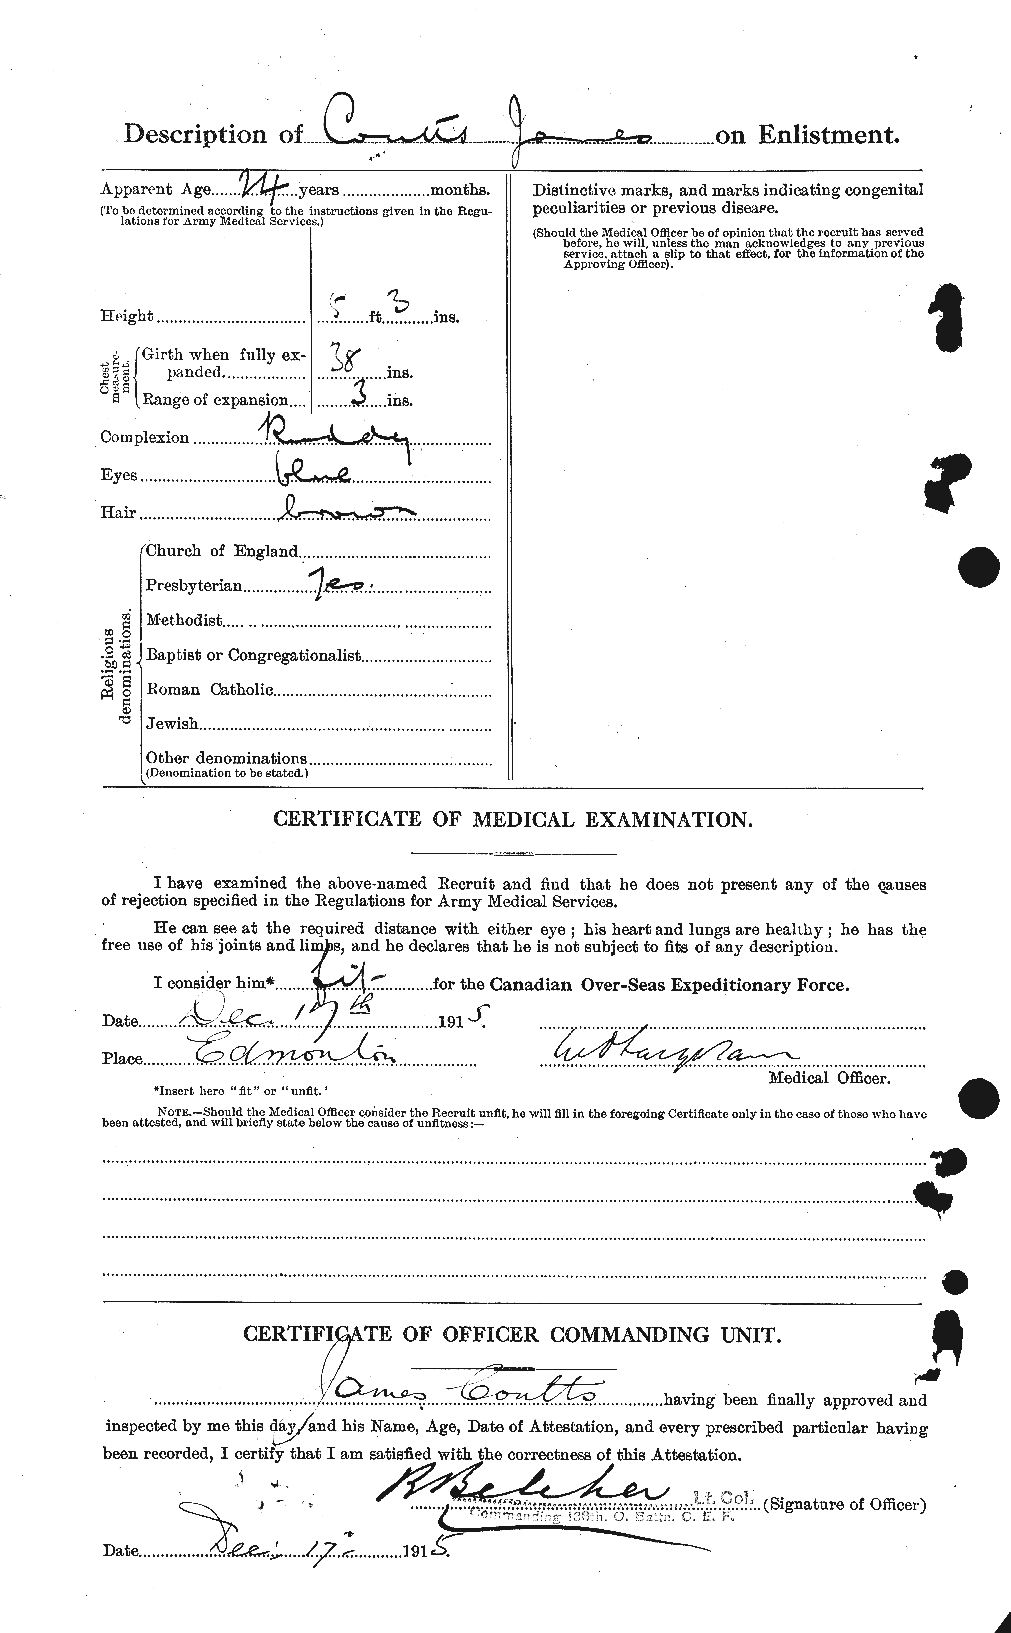 Dossiers du Personnel de la Première Guerre mondiale - CEC 058010b